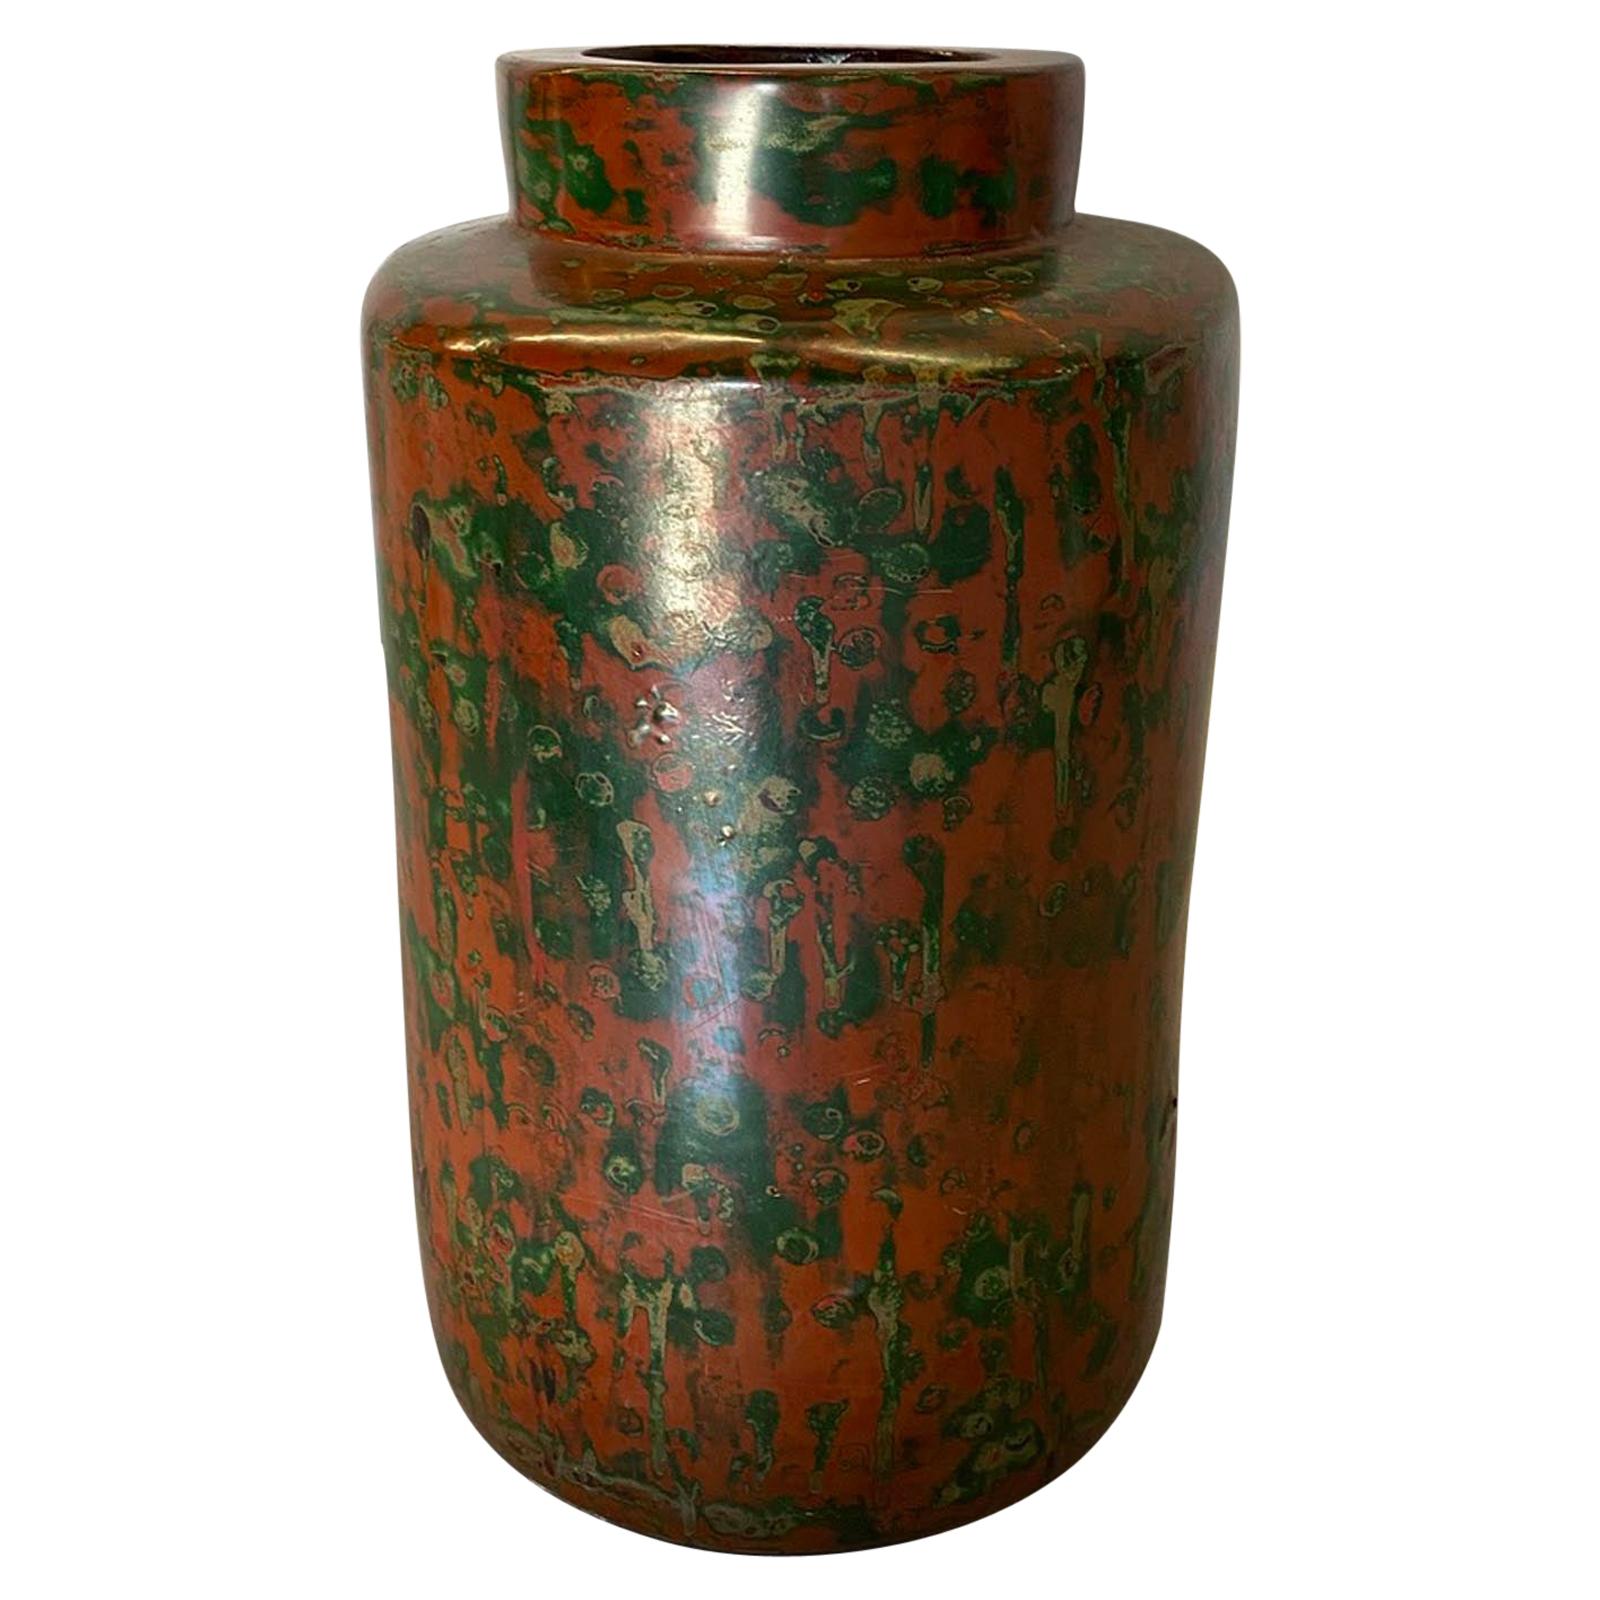 Taisho/Early Showa Japanese Lacquered Bronze Vase